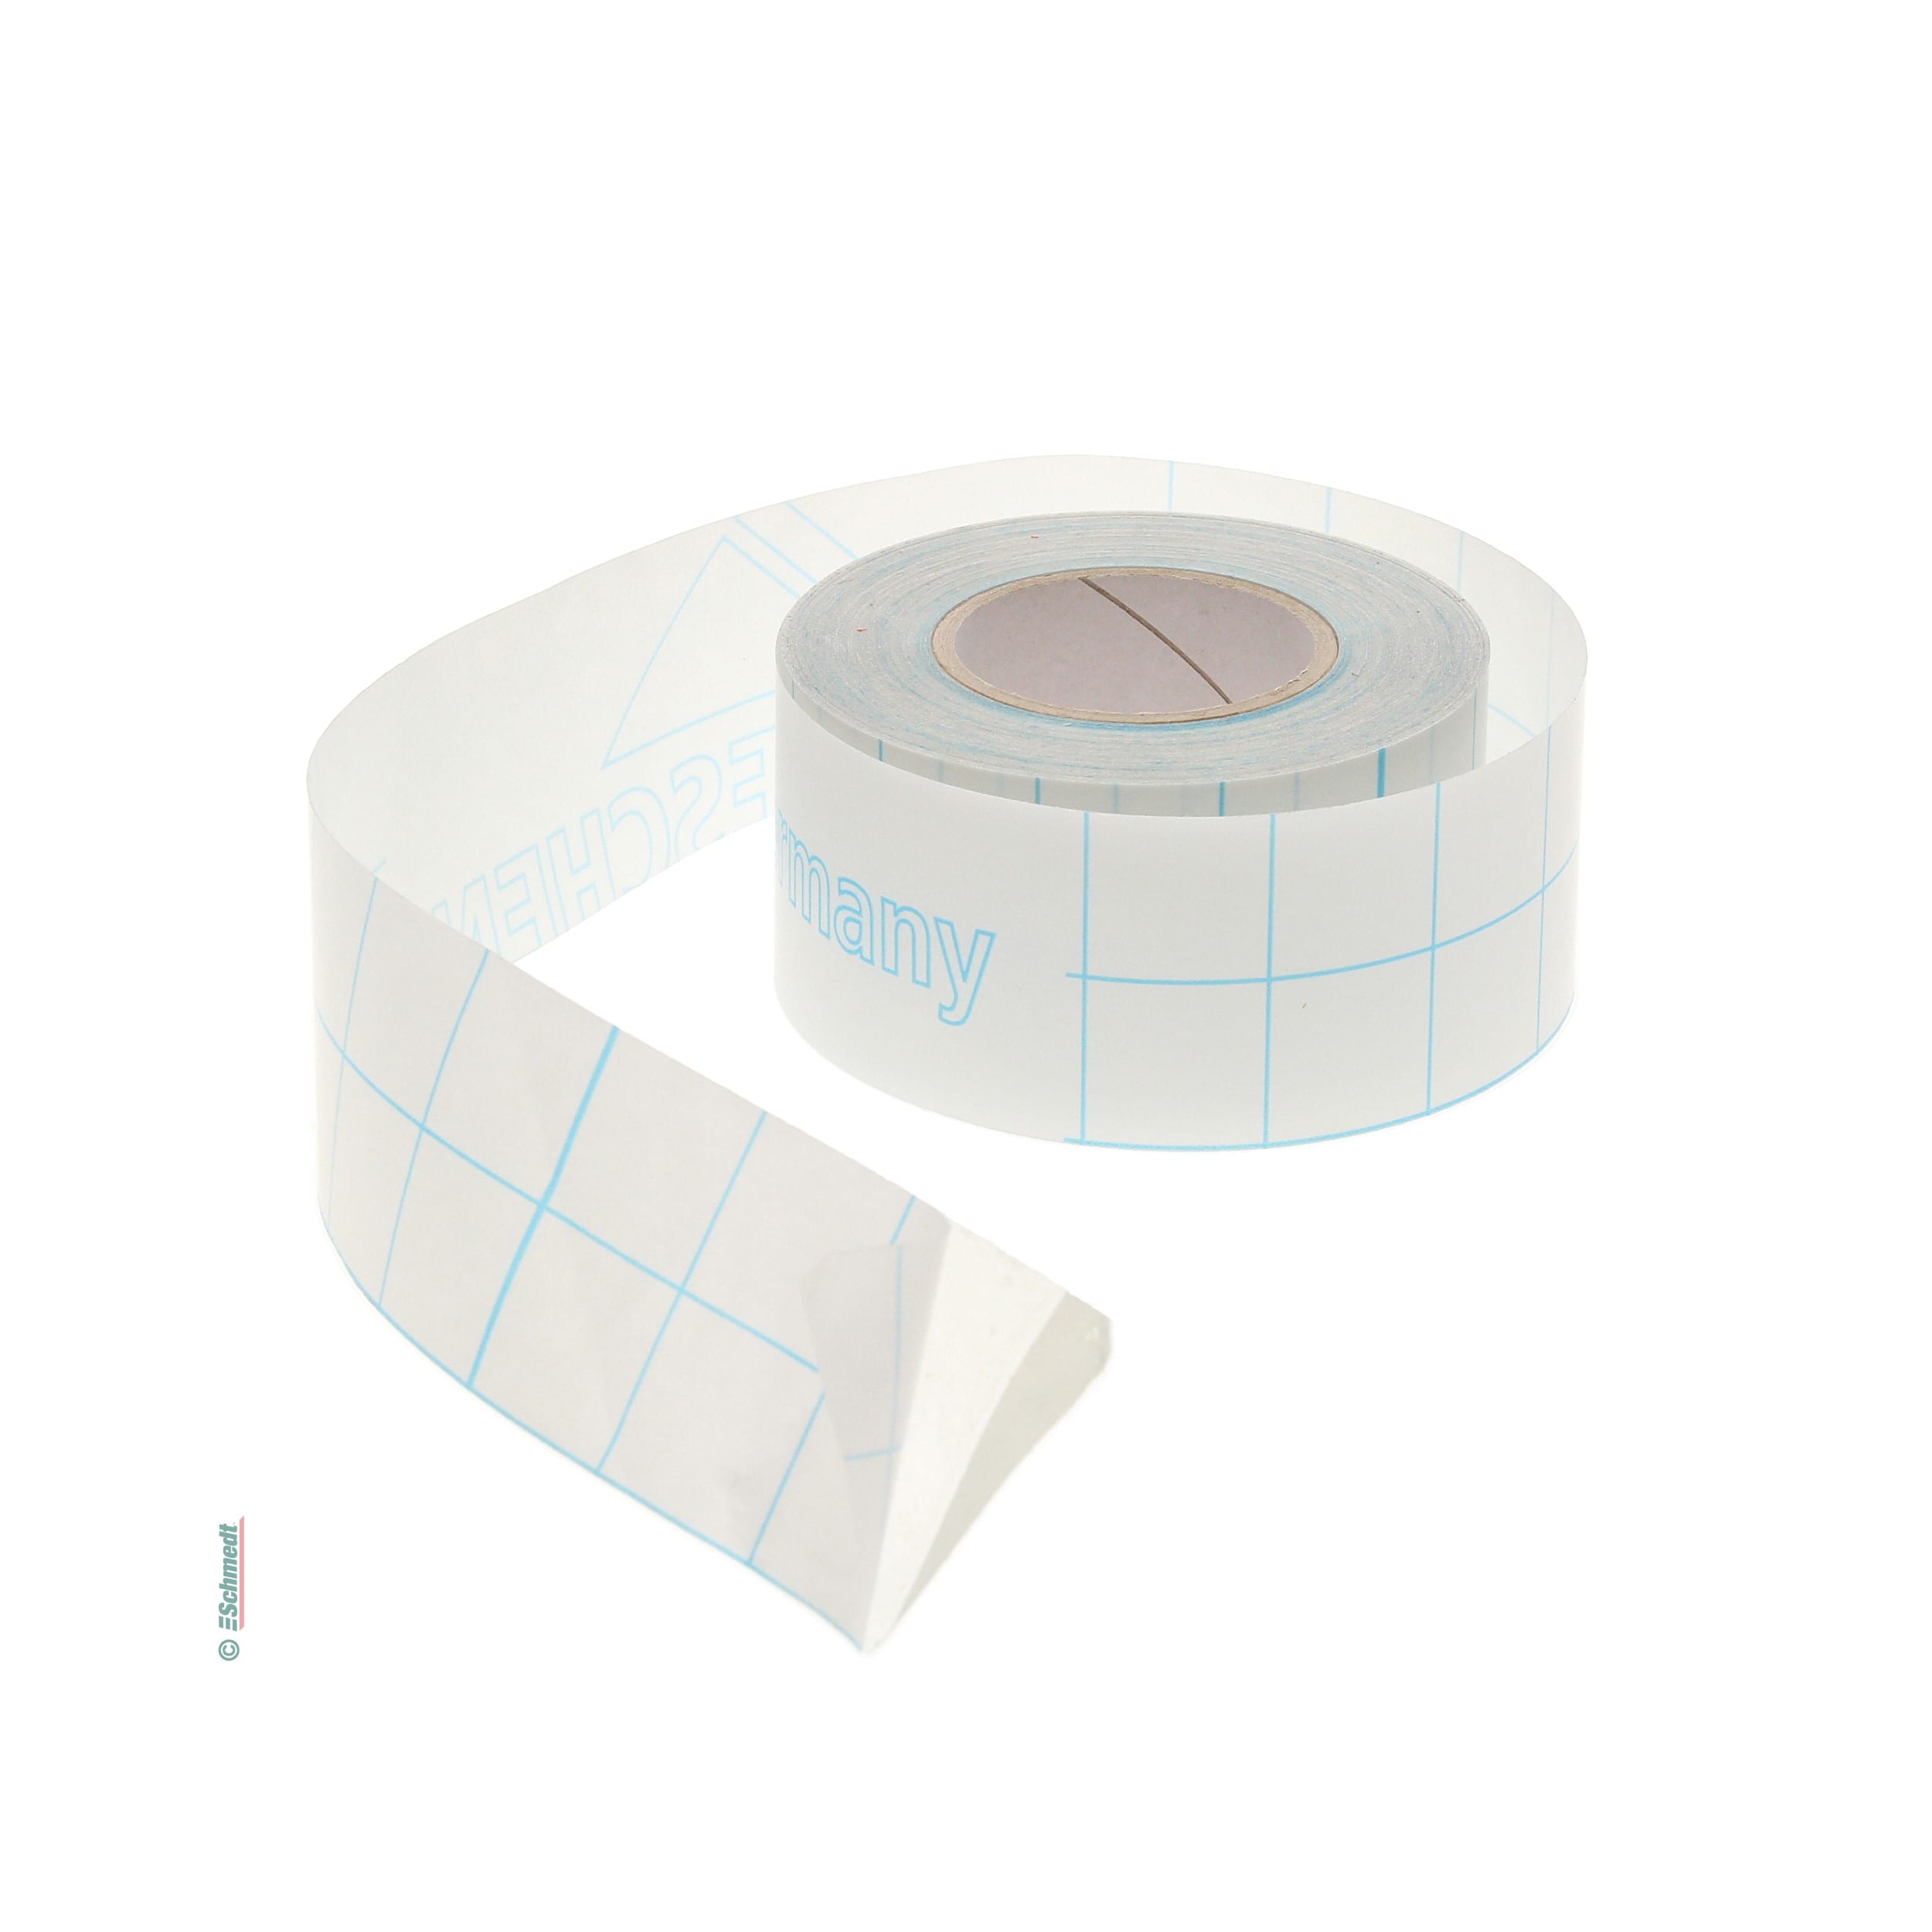 Filmolux 609 - Film de protección autoadhesivo - Precortada para protección de etiquetas - en rollos - Aplicaciones: protección para etiquet...